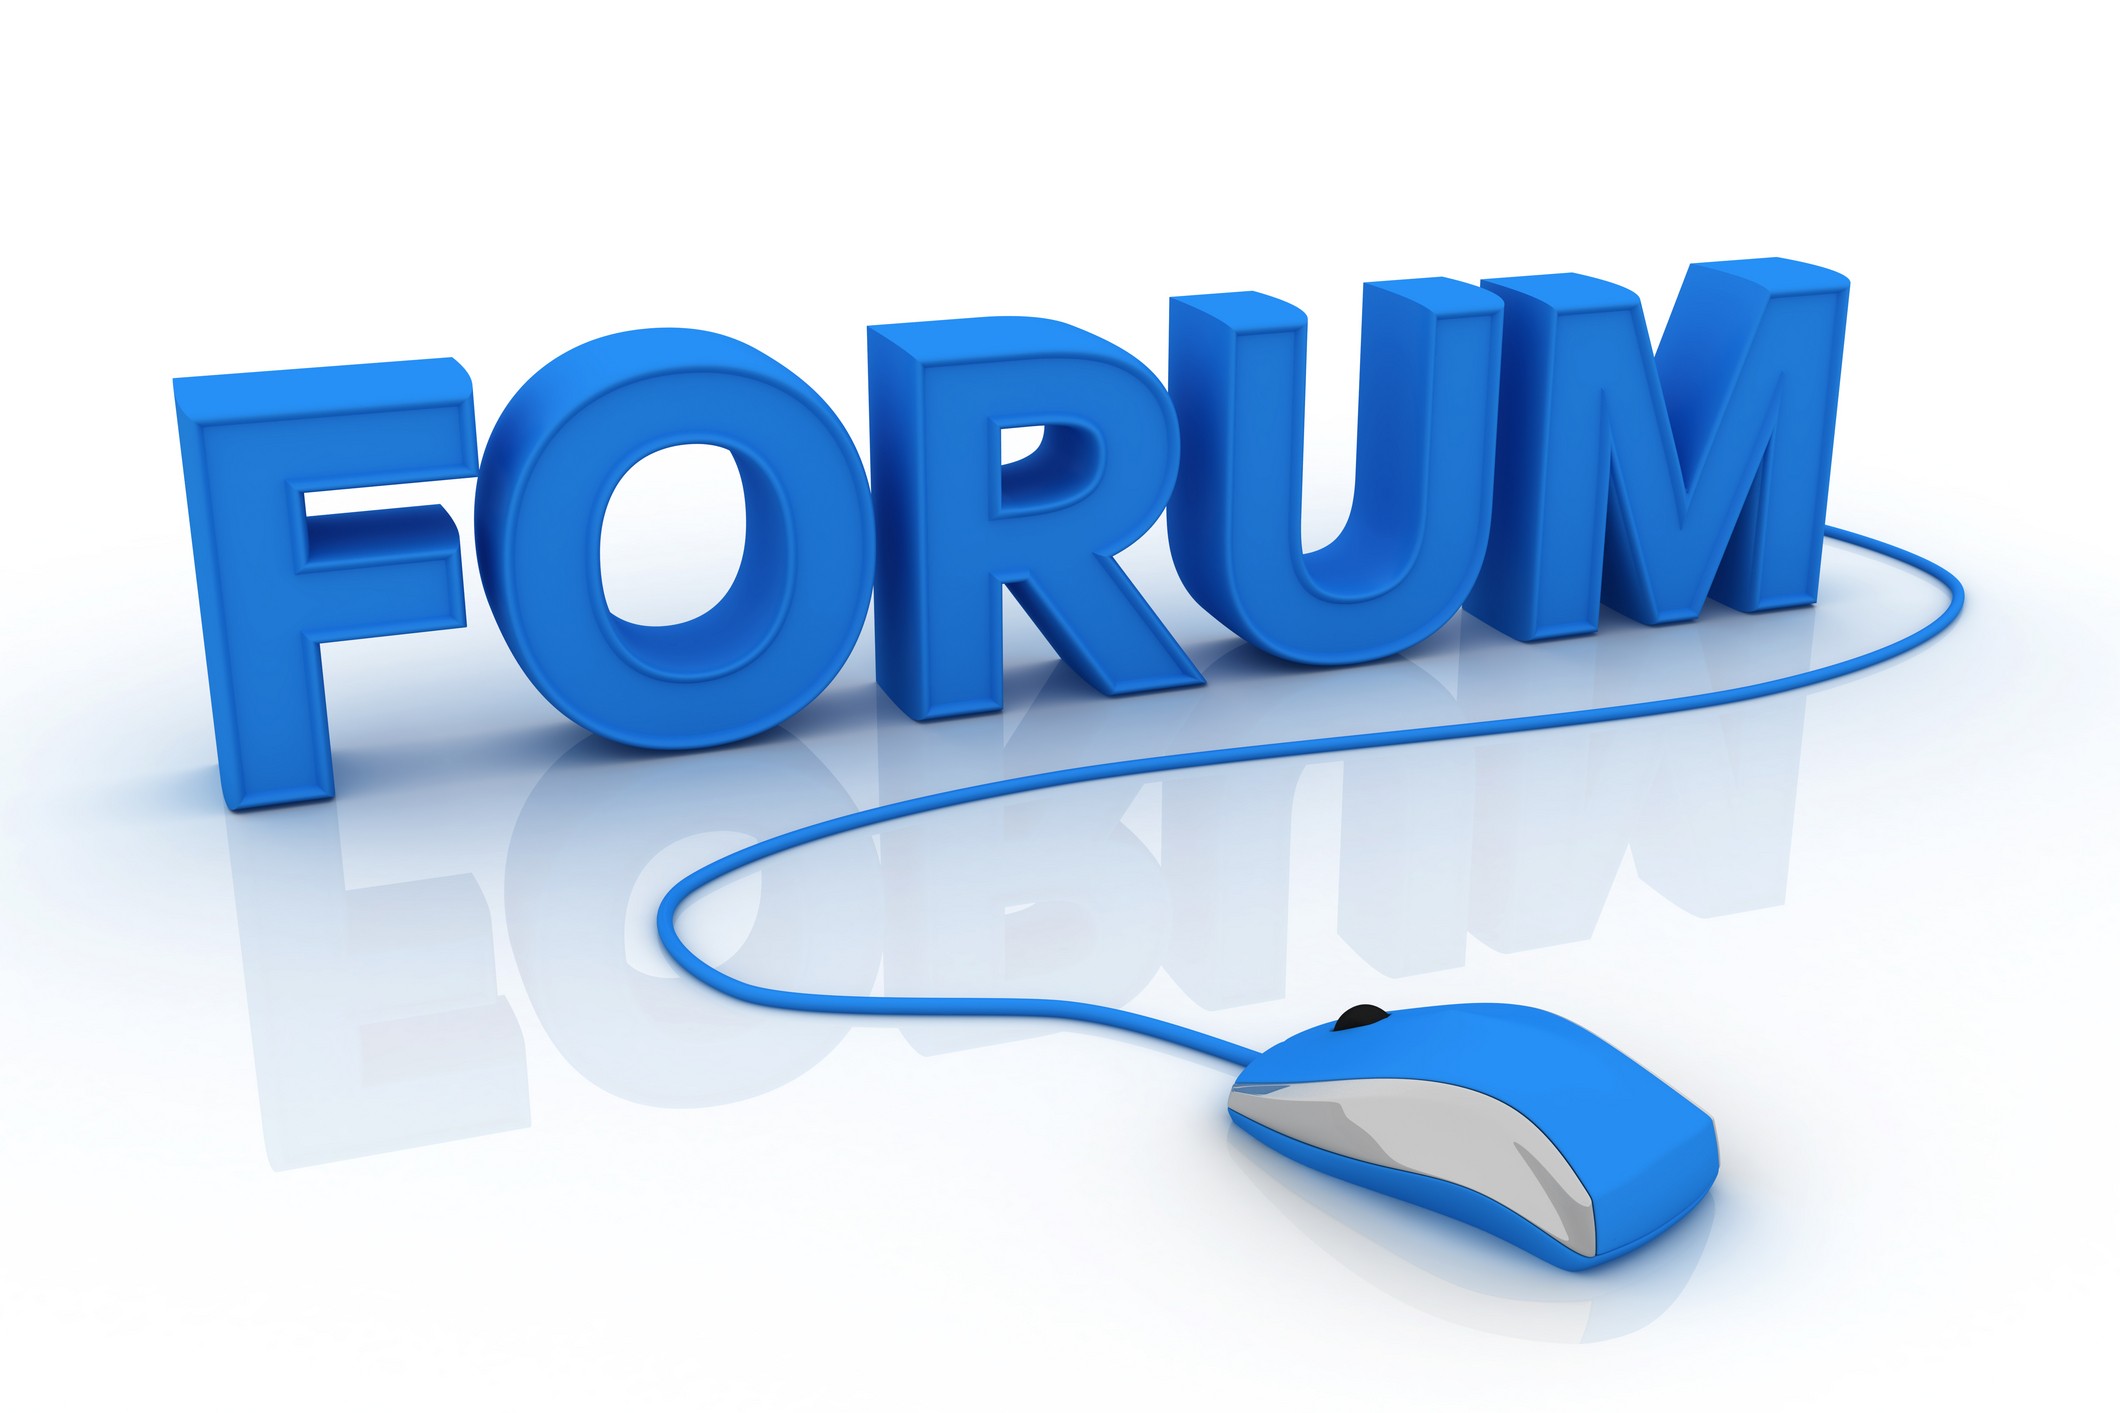 Этою forum. Интернет форум. Веб форум. Форум. Форум логотип.